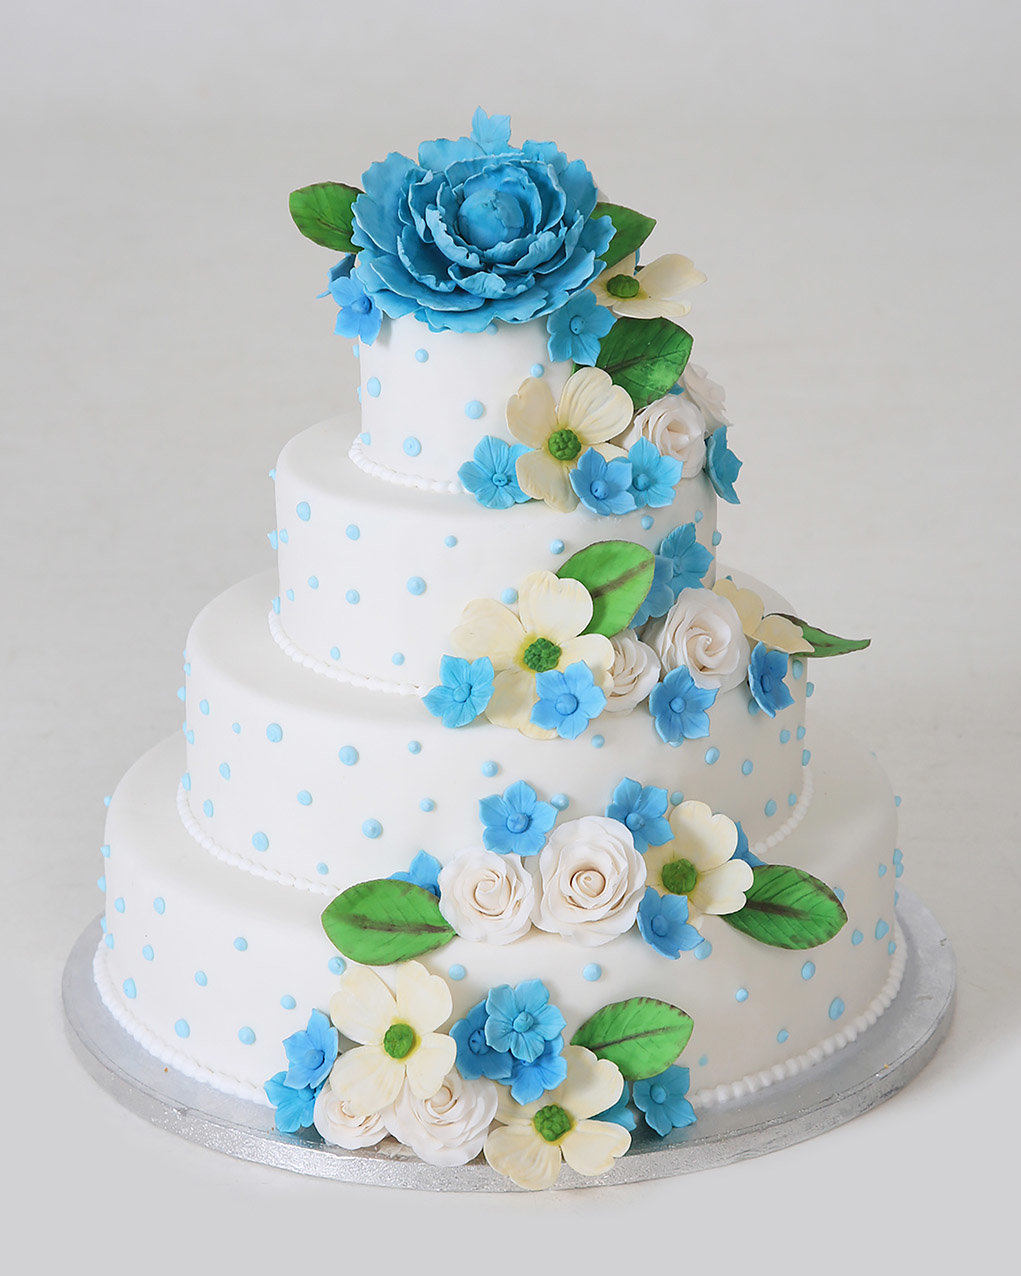 Bruidstaart metblauwe en witte bloemen van Banketbakkerij van den Berg